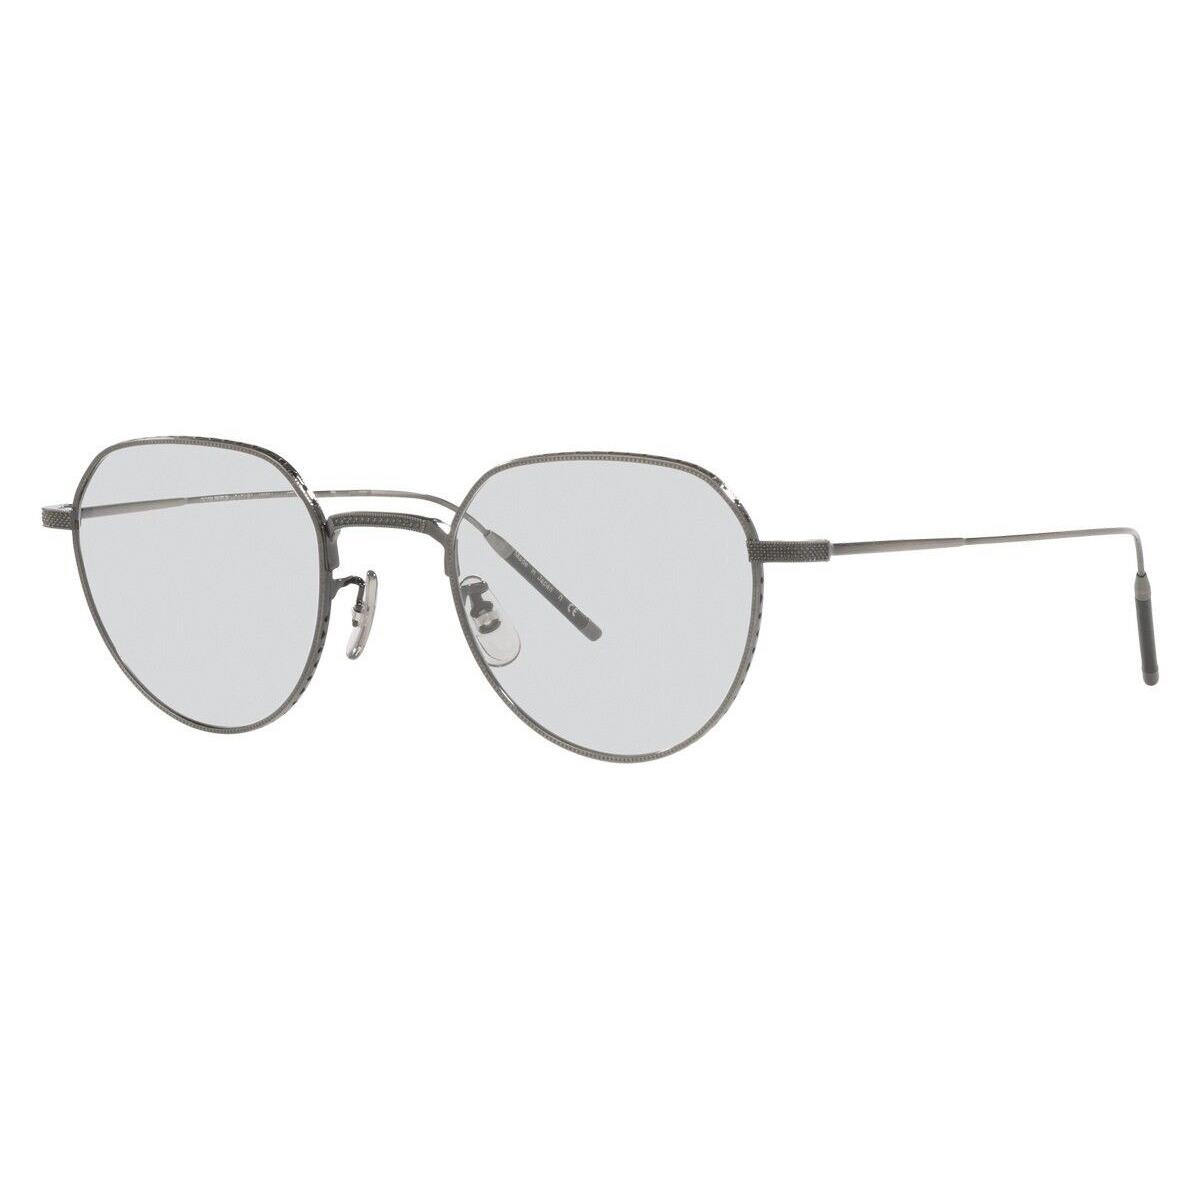 Oliver Peoples OV1298T TK-4 5076 Sunglasses Pewter Silver Mist Lens 47mm